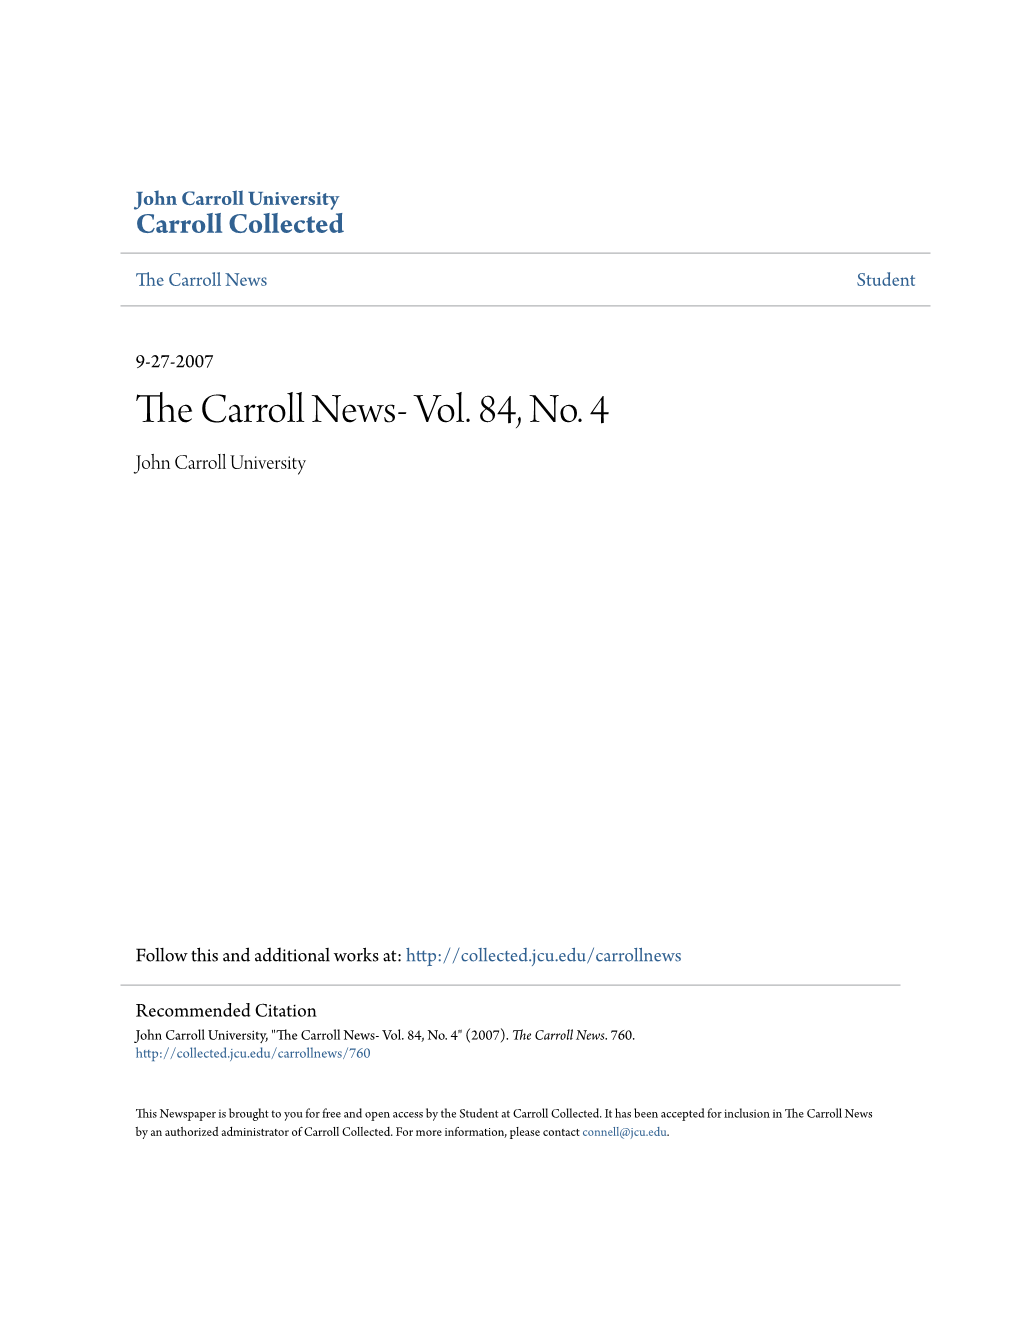 The Carroll News- Vol. 84, No. 4